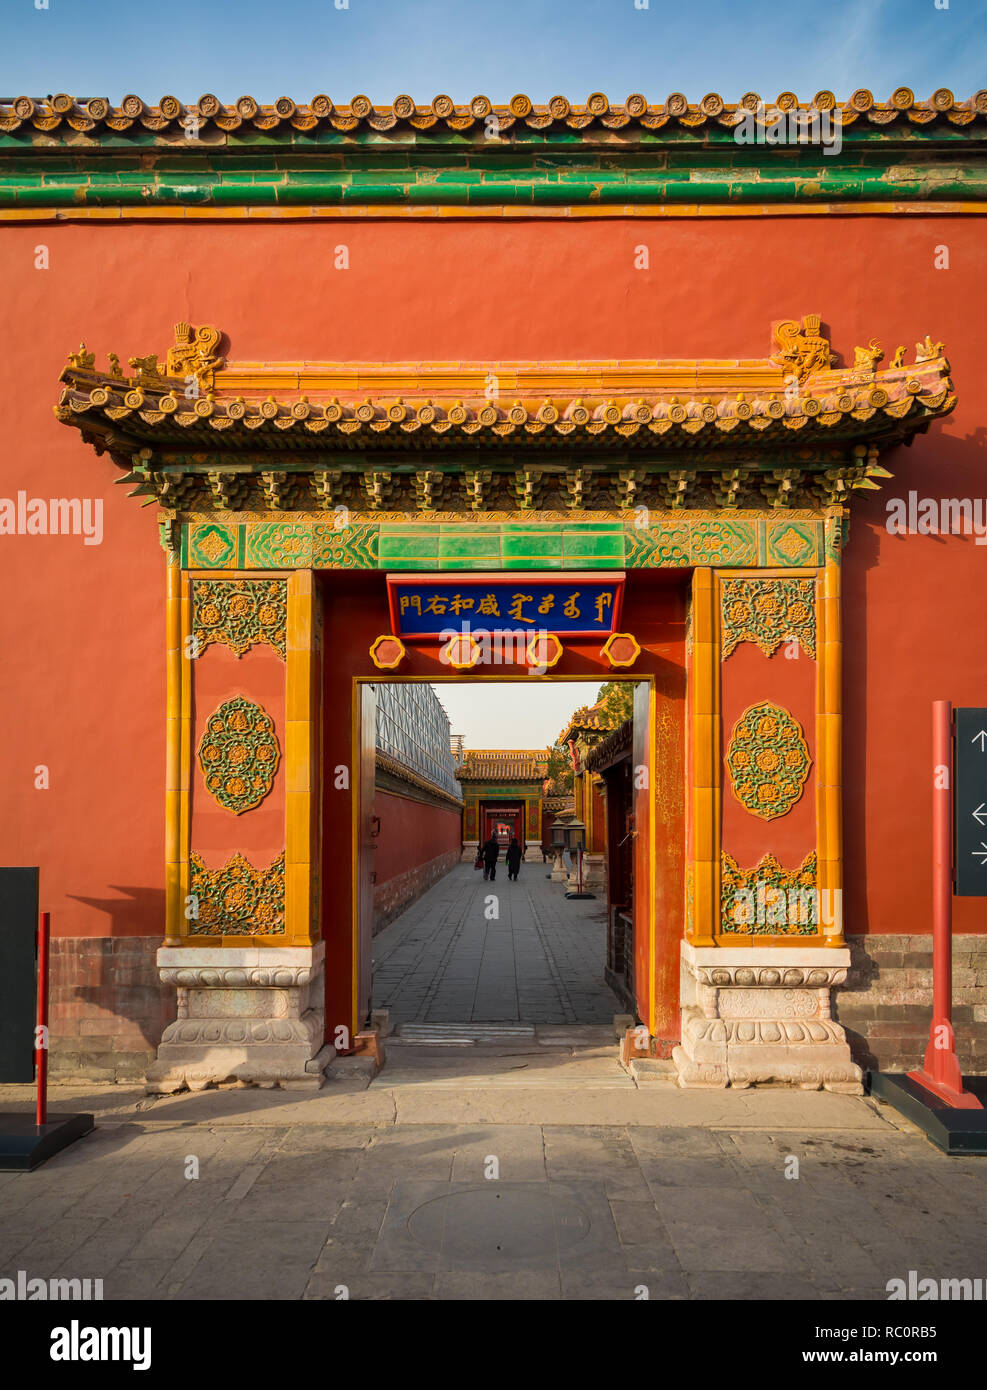 La Ciudad Prohibida es un complejo de palacio en el centro de Beijing, China. Foto de stock